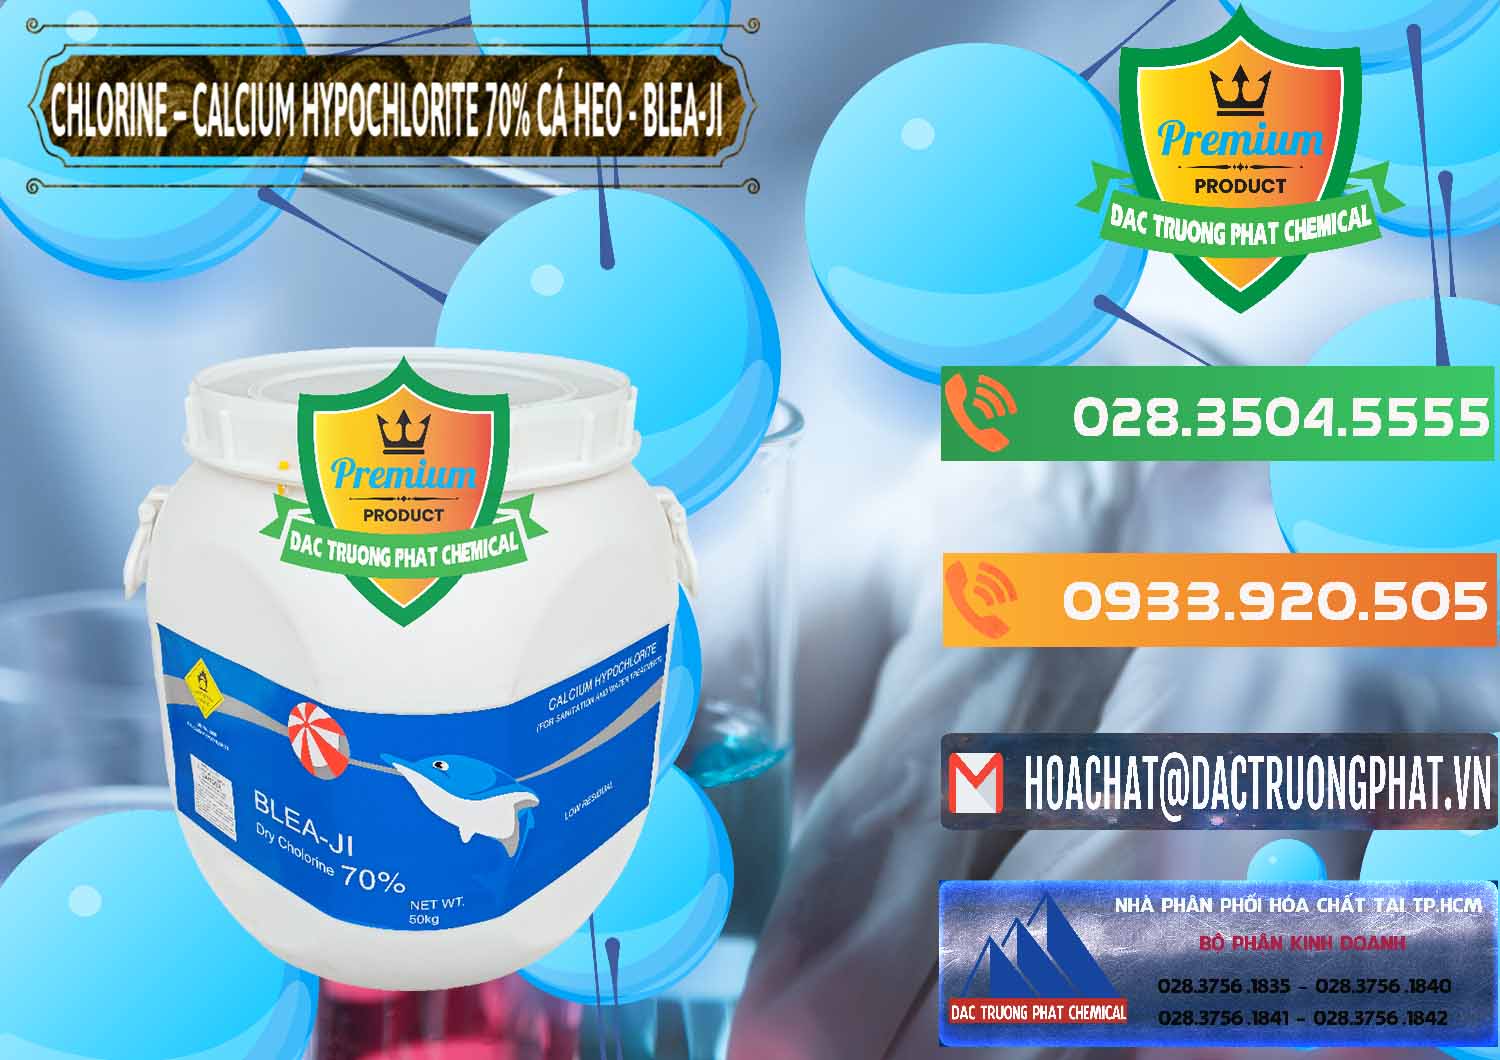 Nơi phân phối và bán Clorin - Chlorine Cá Heo 70% Blea-Ji Trung Quốc China - 0056 - Chuyên kinh doanh - phân phối hóa chất tại TP.HCM - hoachatxulynuoc.com.vn